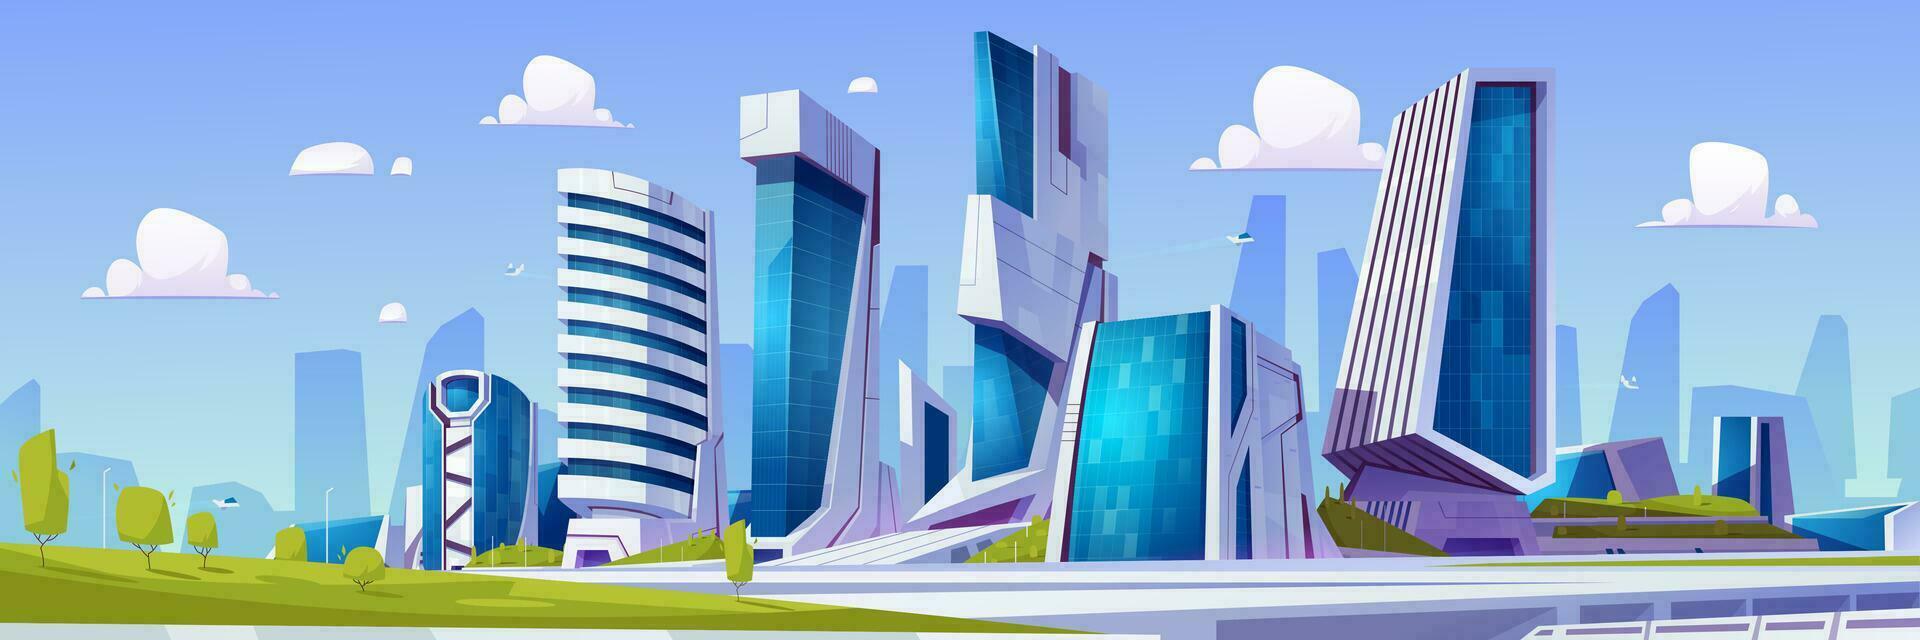 desenho animado futurista cidade com verde parque vetor